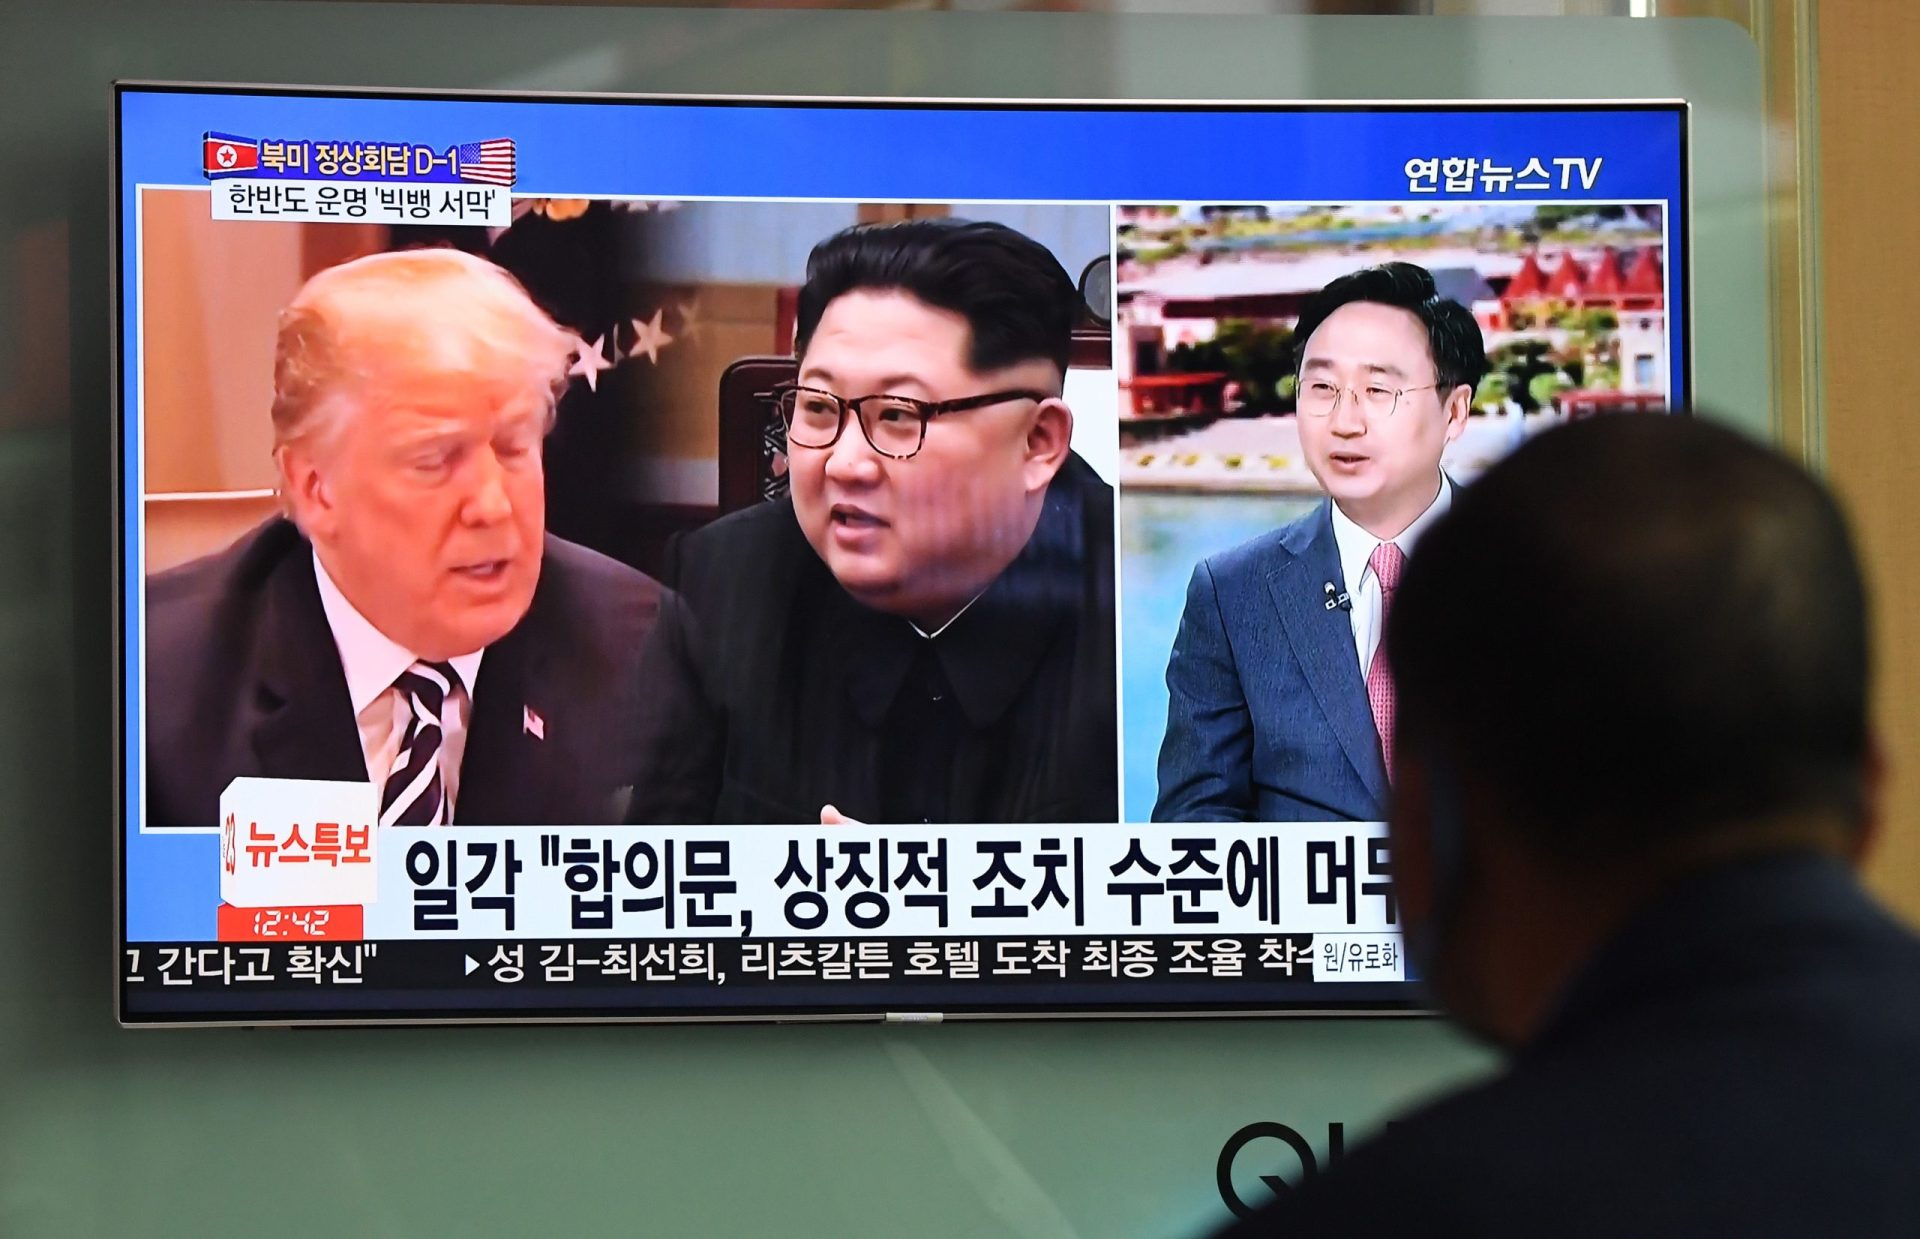 Coreia do Norte e EUA. “Nova era” nas relações e desnuclearização em discussão amanhã